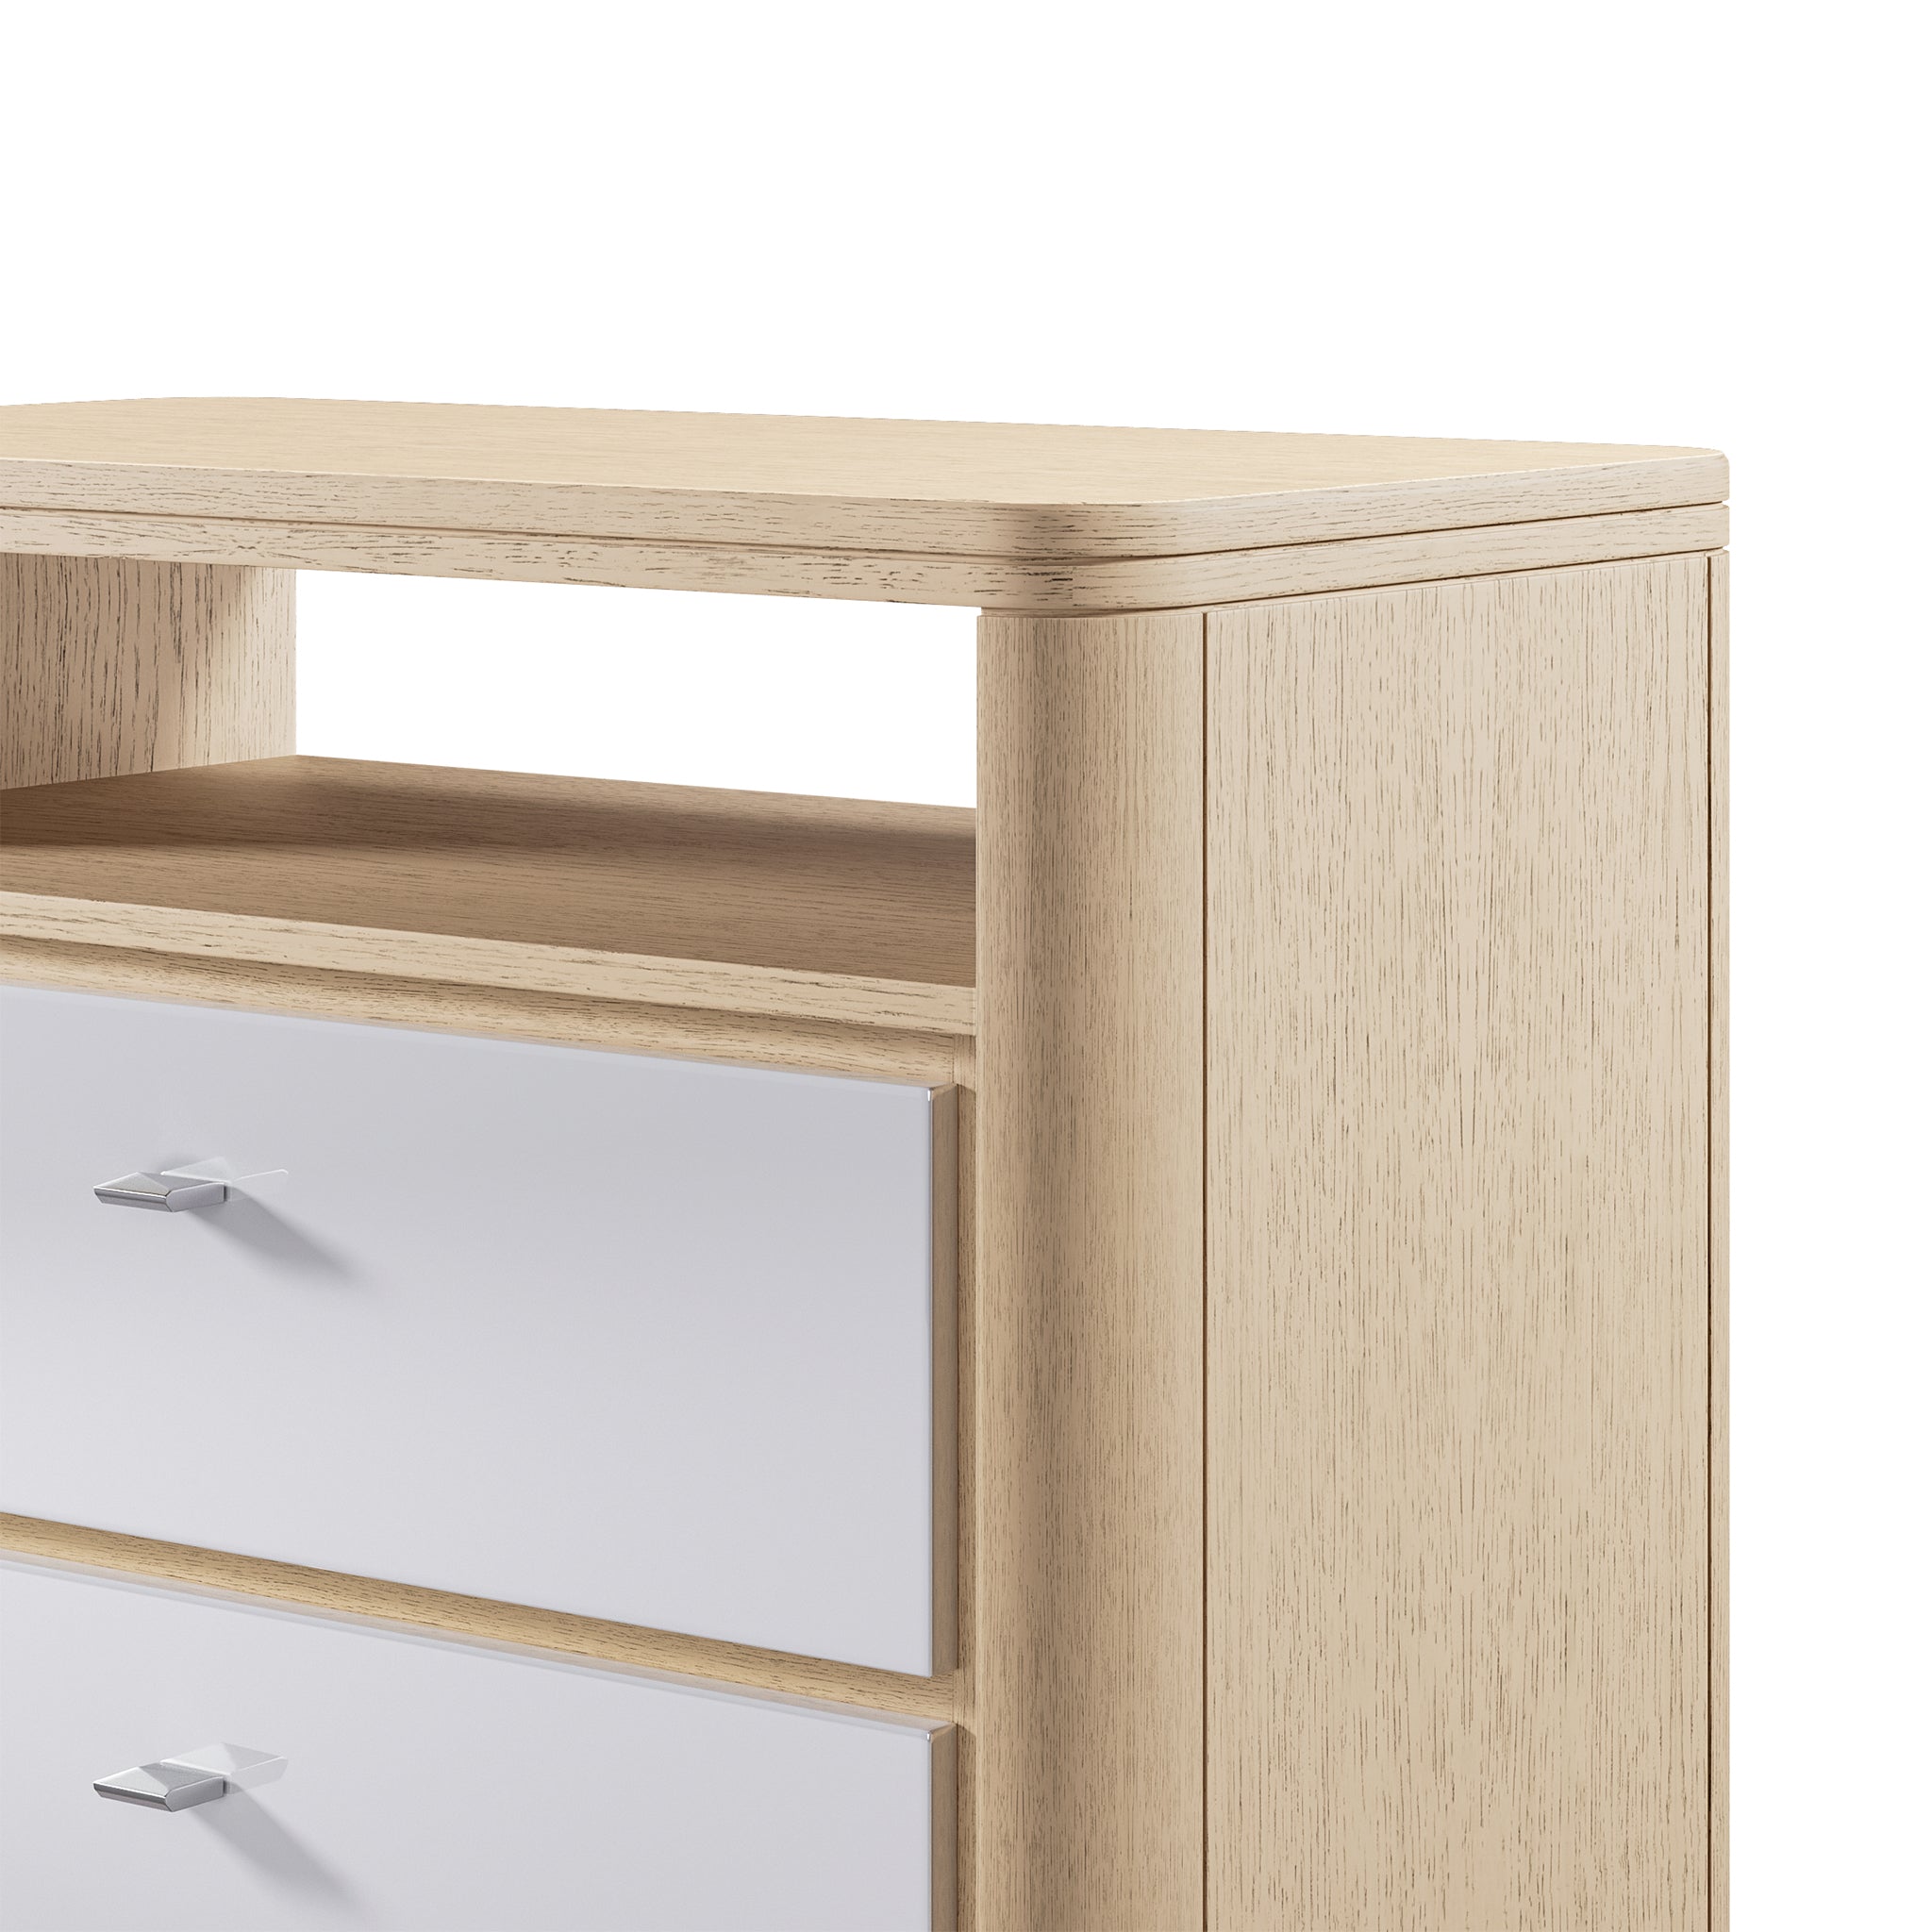 adriana hoyos gem wooden top nightstand nightstands 